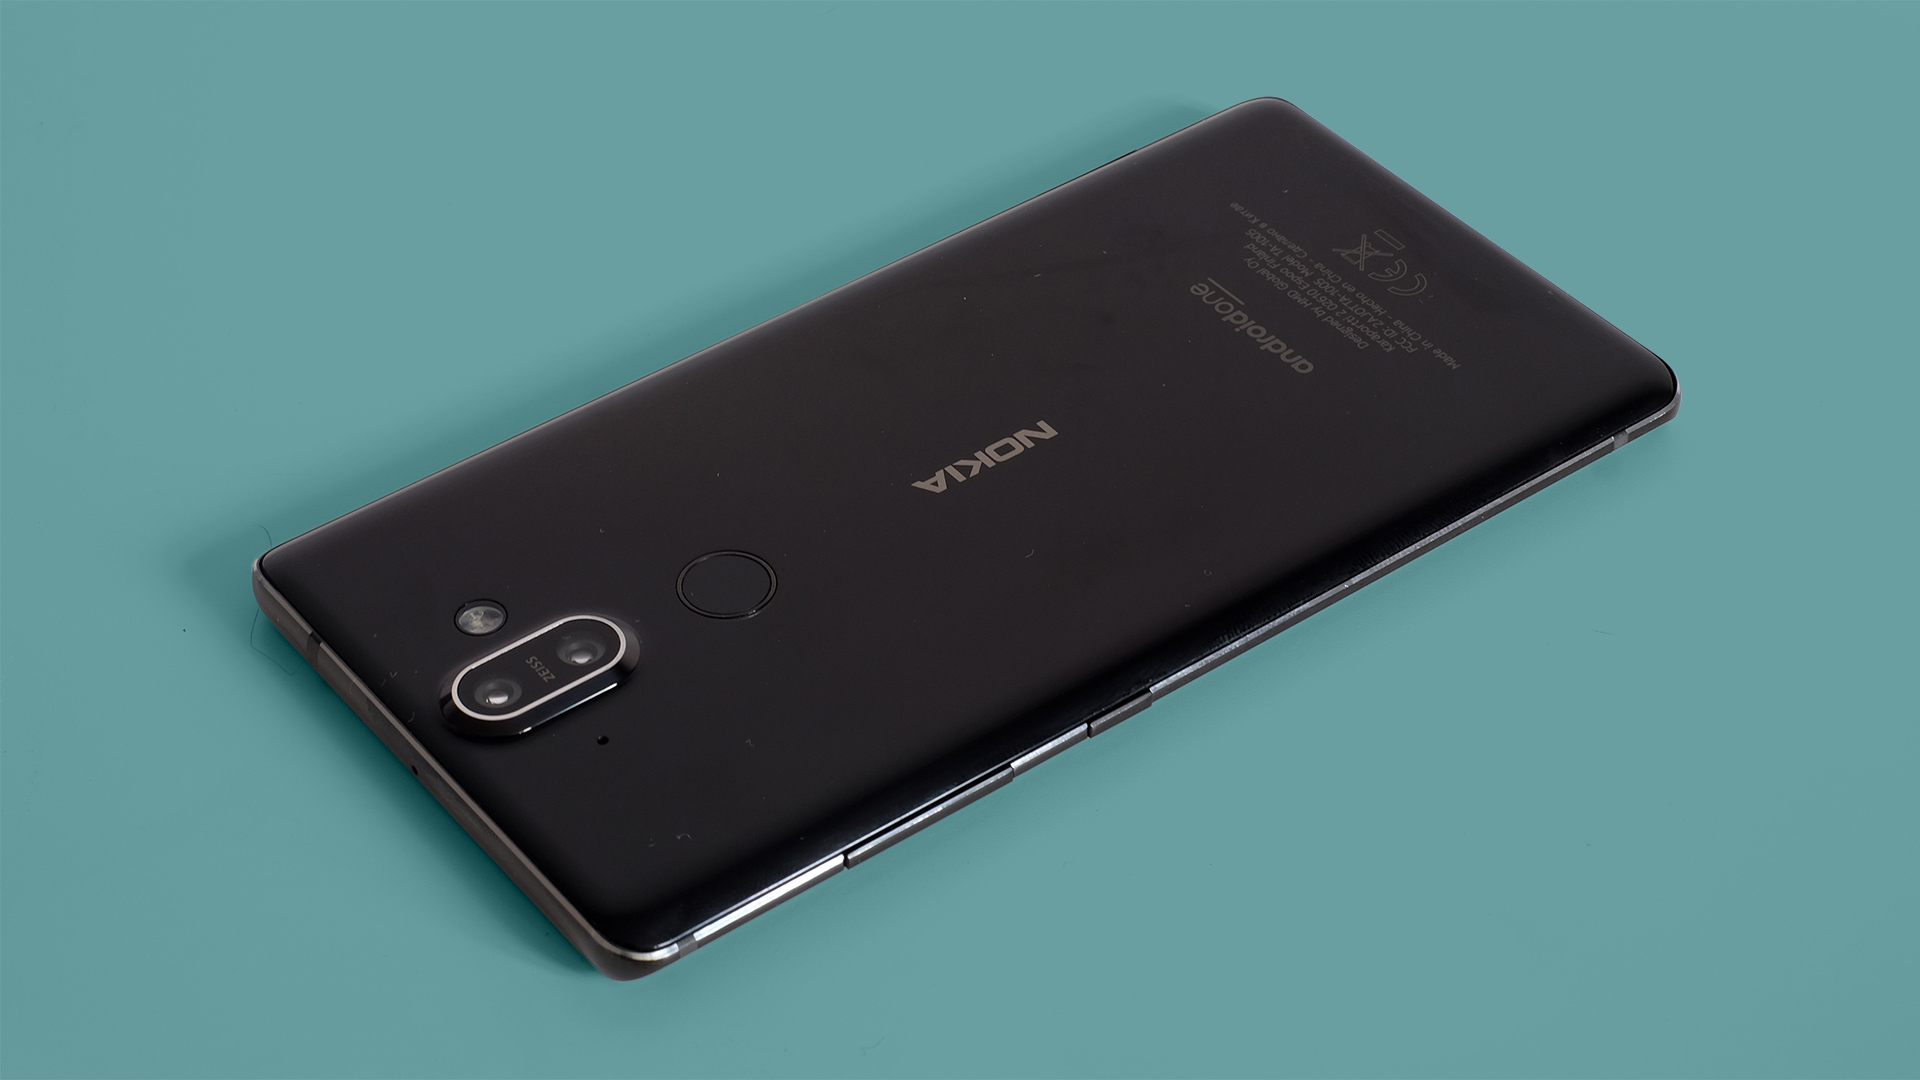 HMD ยืนยัน จะเปิดตัวสมาร์ทโฟนใหม่ 11 ต.ค. นี้ : อาจเป็น Nokia 7.1 Plus